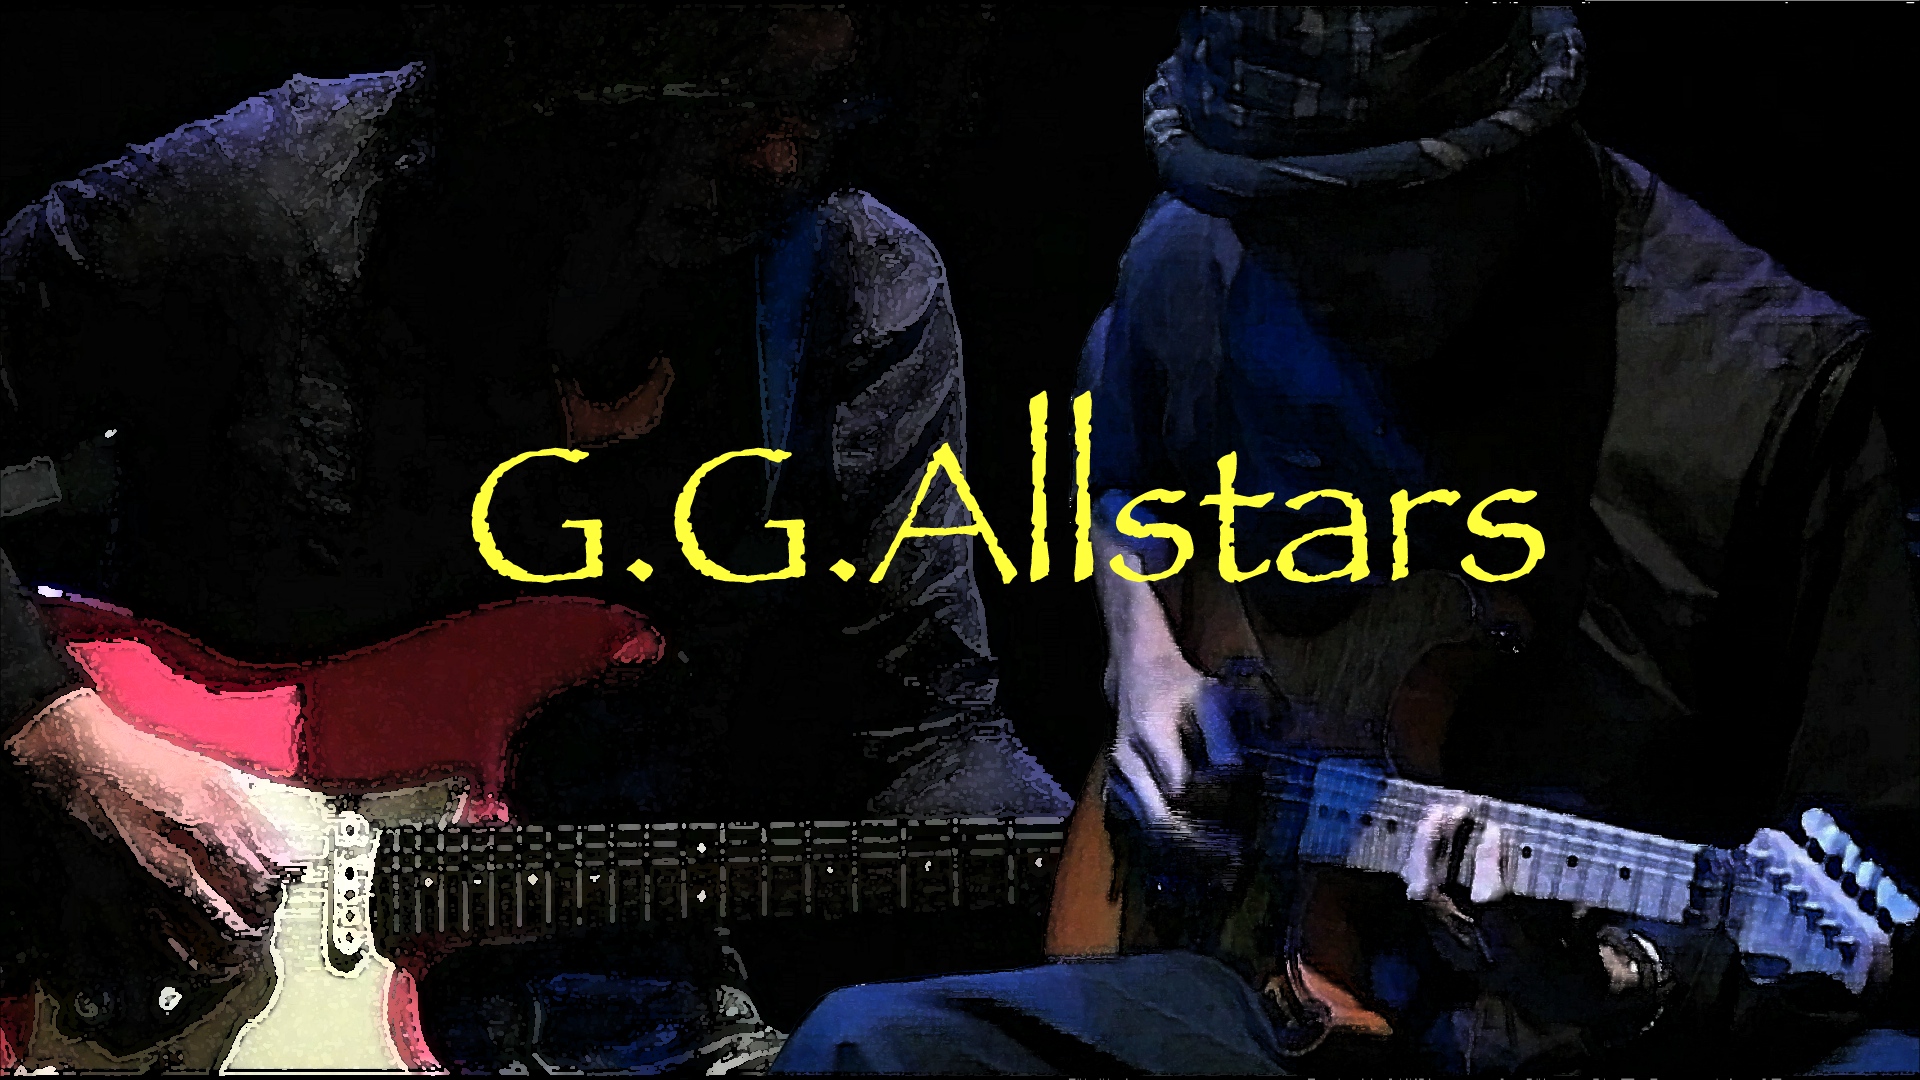 G.G.Allstars